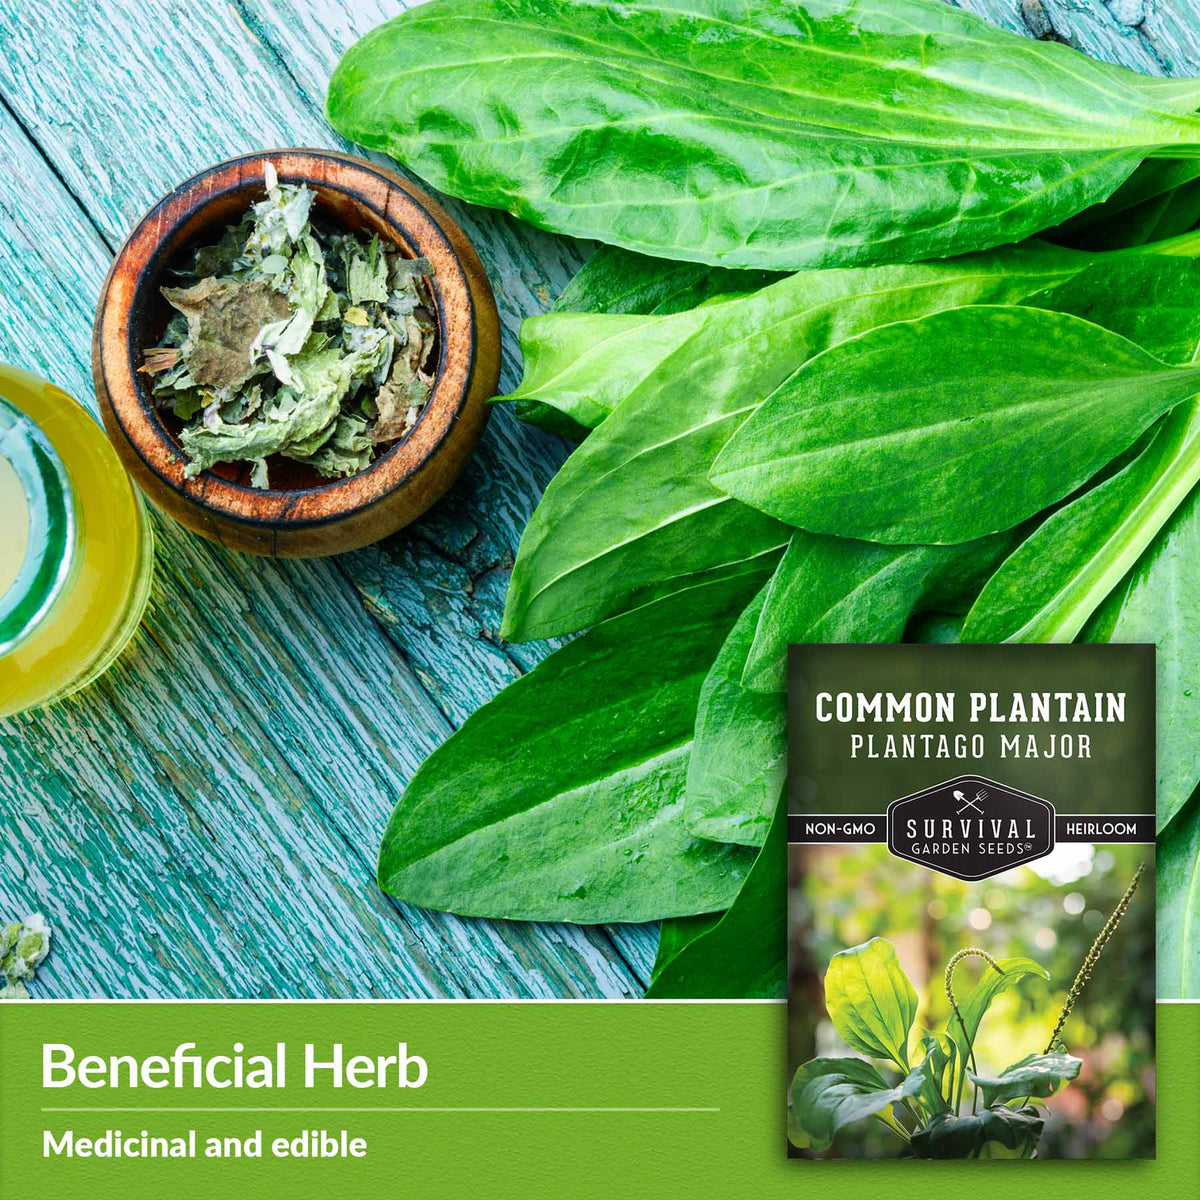 Beneficial herb - medicinal and edible